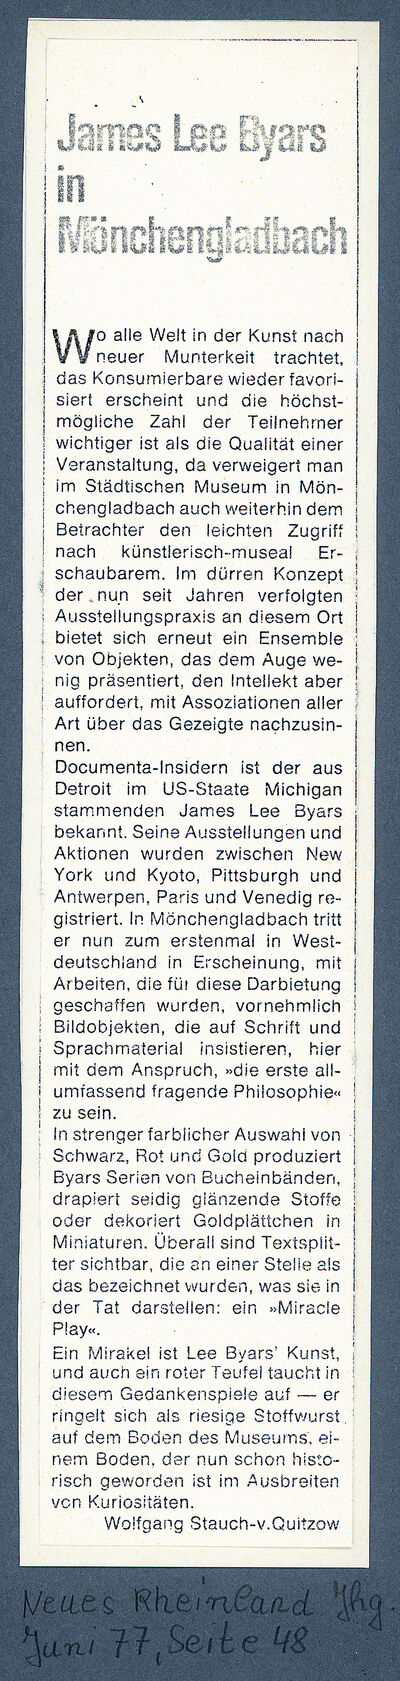 Neues Rheinland, Juni, 1977